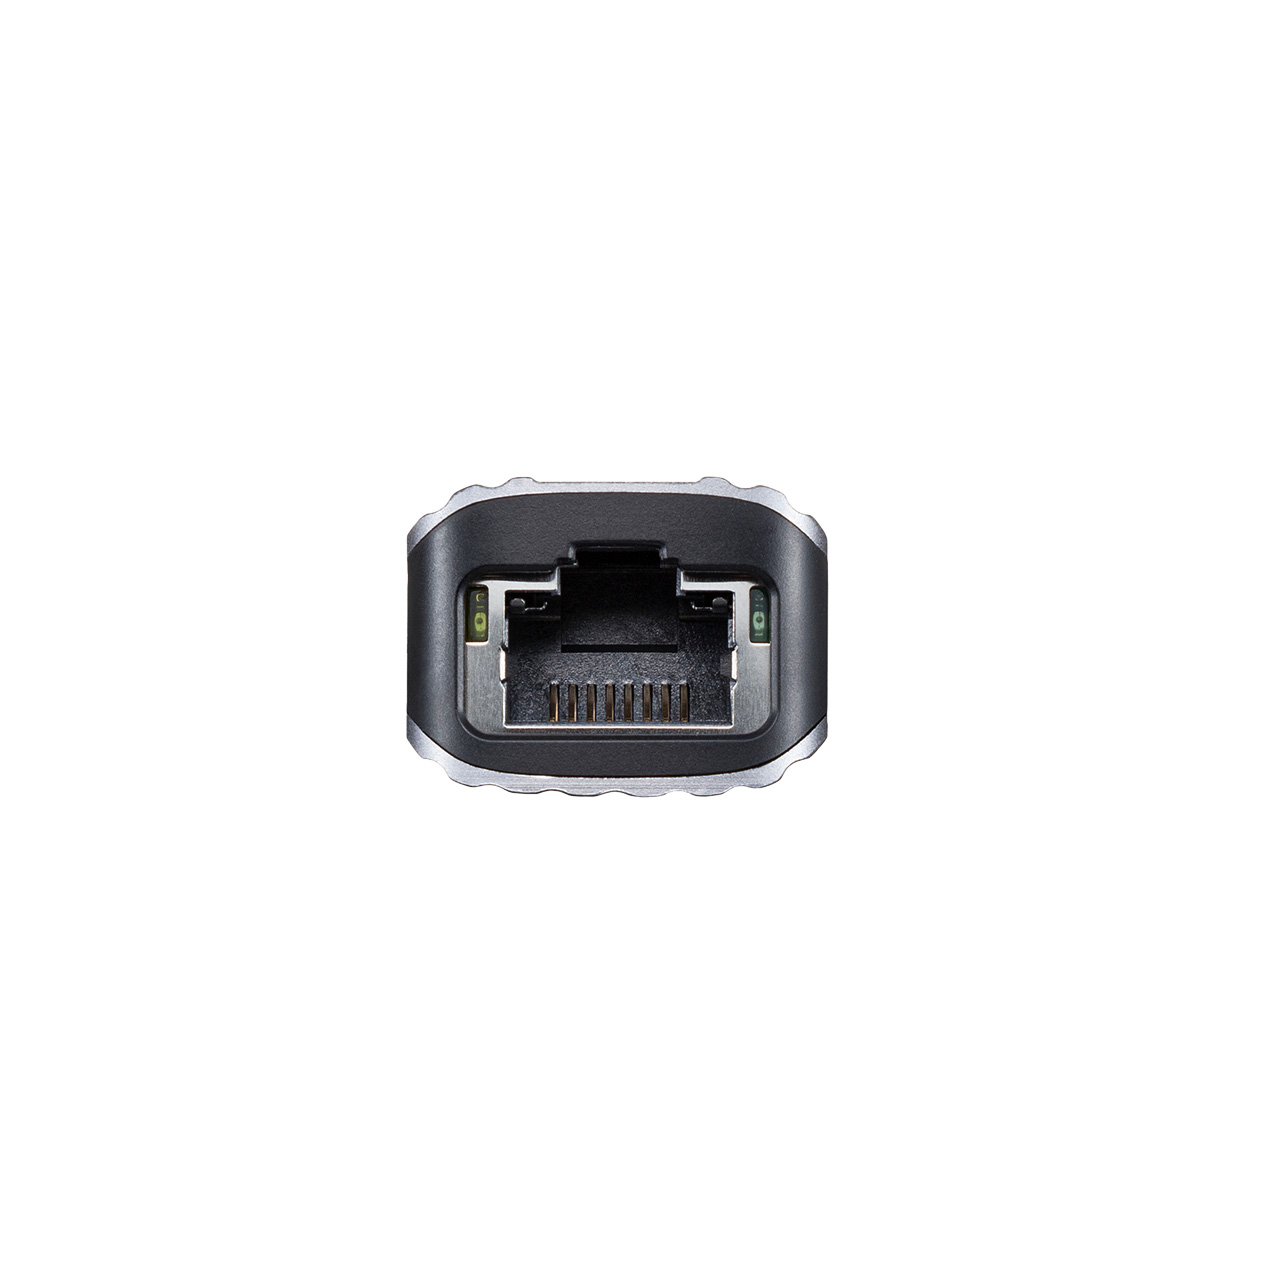 【ビジネス応援セール】USBハブ HDMI出力対応 小型 ドッキングステーション LANポート USB A ×3 アルミ素材 ケーブル長50cm 400-HUBC13GM